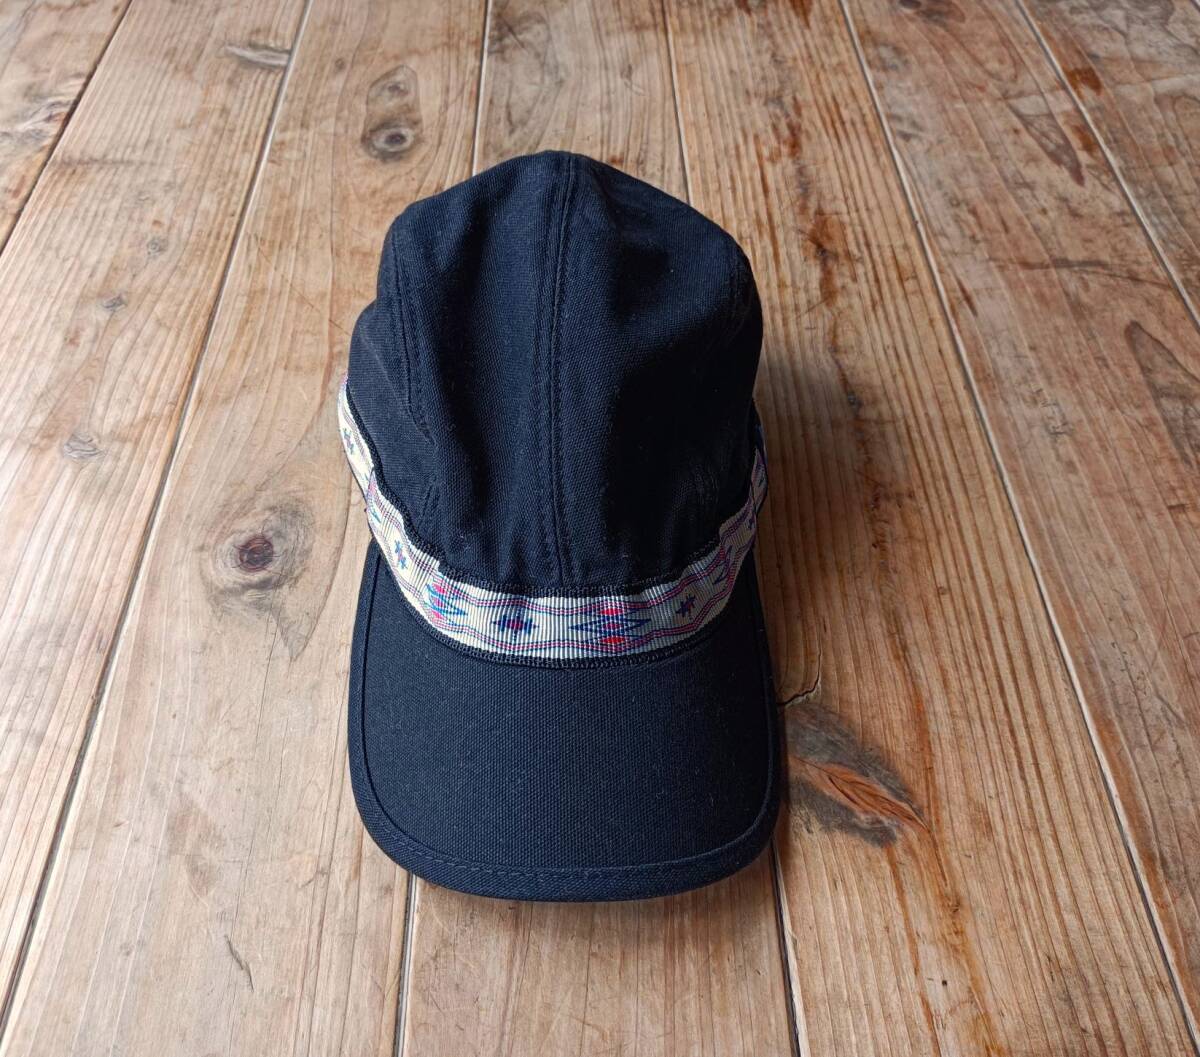 送料無料♪USA製KAVUカブー ストラップキャップ ブラック 黒 size L コットン 4パネル 帽子 A&F 美品 アウトドアキャンプ の画像2